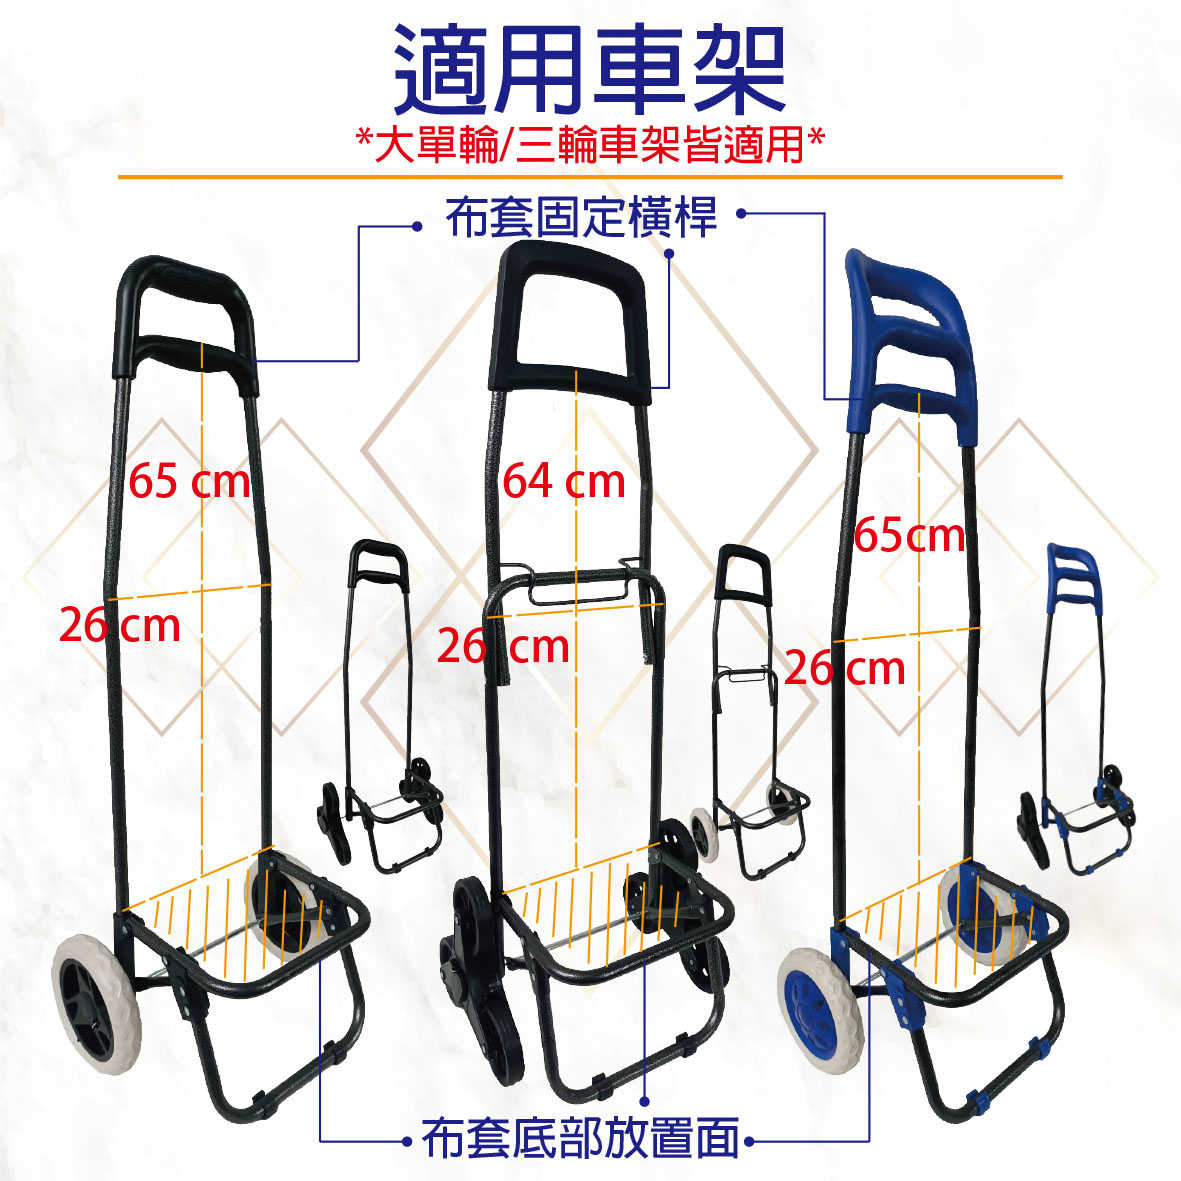 韓風款 - 購物車專用袋/替換布套 (大單輪/三輪爬梯) (含底板) (不含車架及輪子)